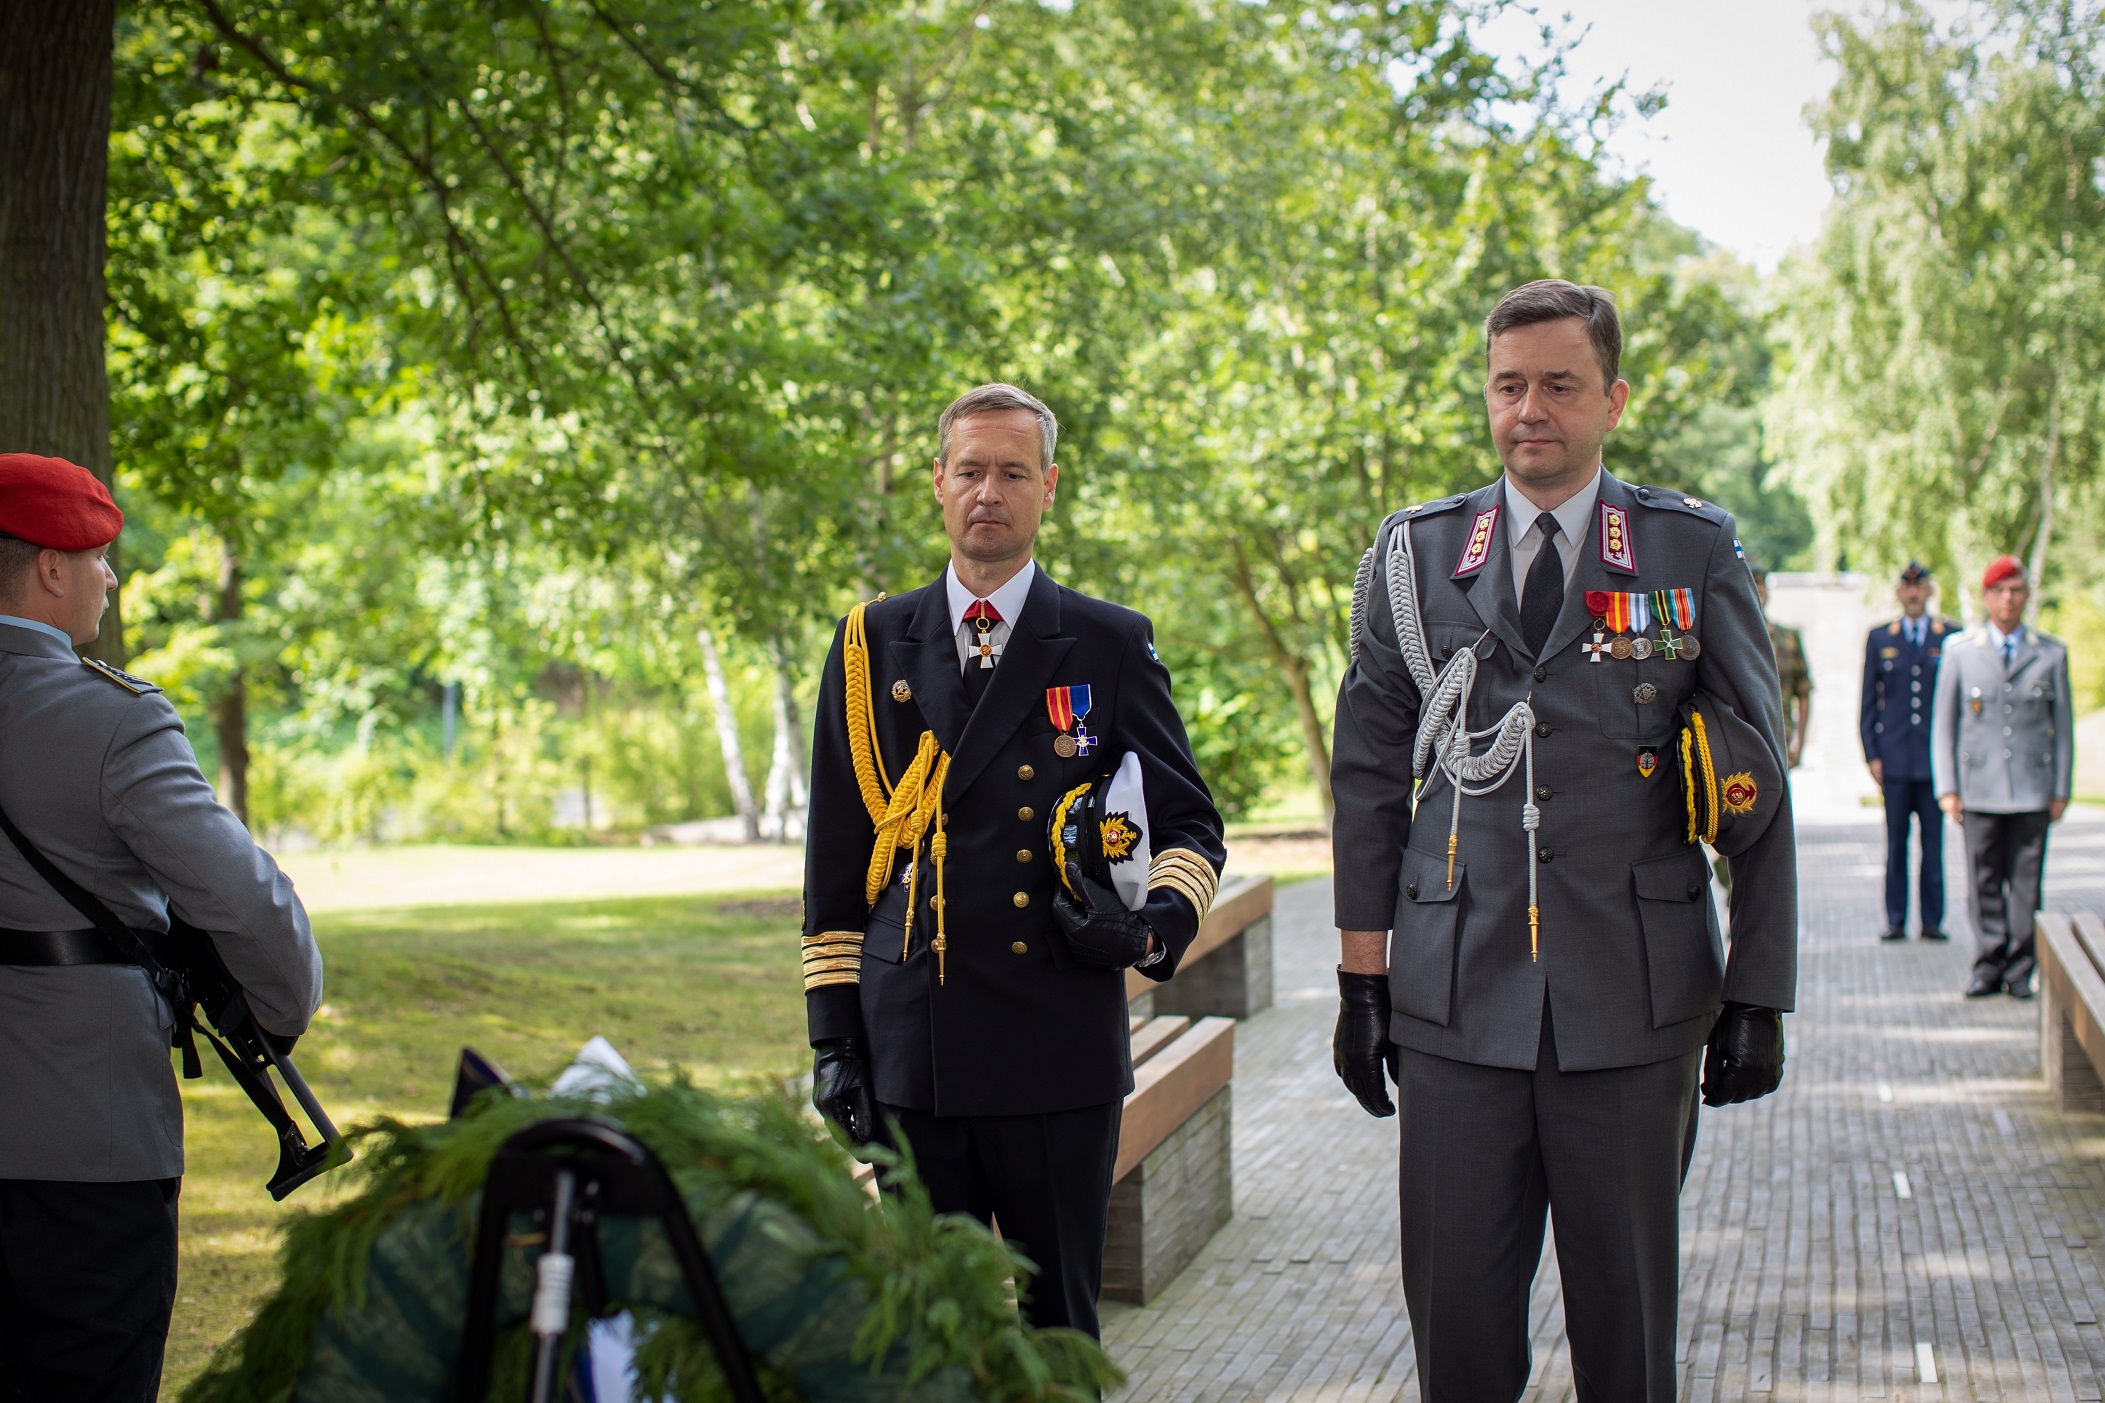 Luovuttava ja vastaanottava puolustusasiamies laskivat seppeleen Saksan Operaatio-esikunnan alueella Potsdamissa sijaitsevaan Muistopuistoon (Wald der Erinnerung). Puisto on avattu vuonna 2014 kunnioittamaan Saksan kriisinhallintaoperaatioissa kaatuneiden sotilaiden muistoa.